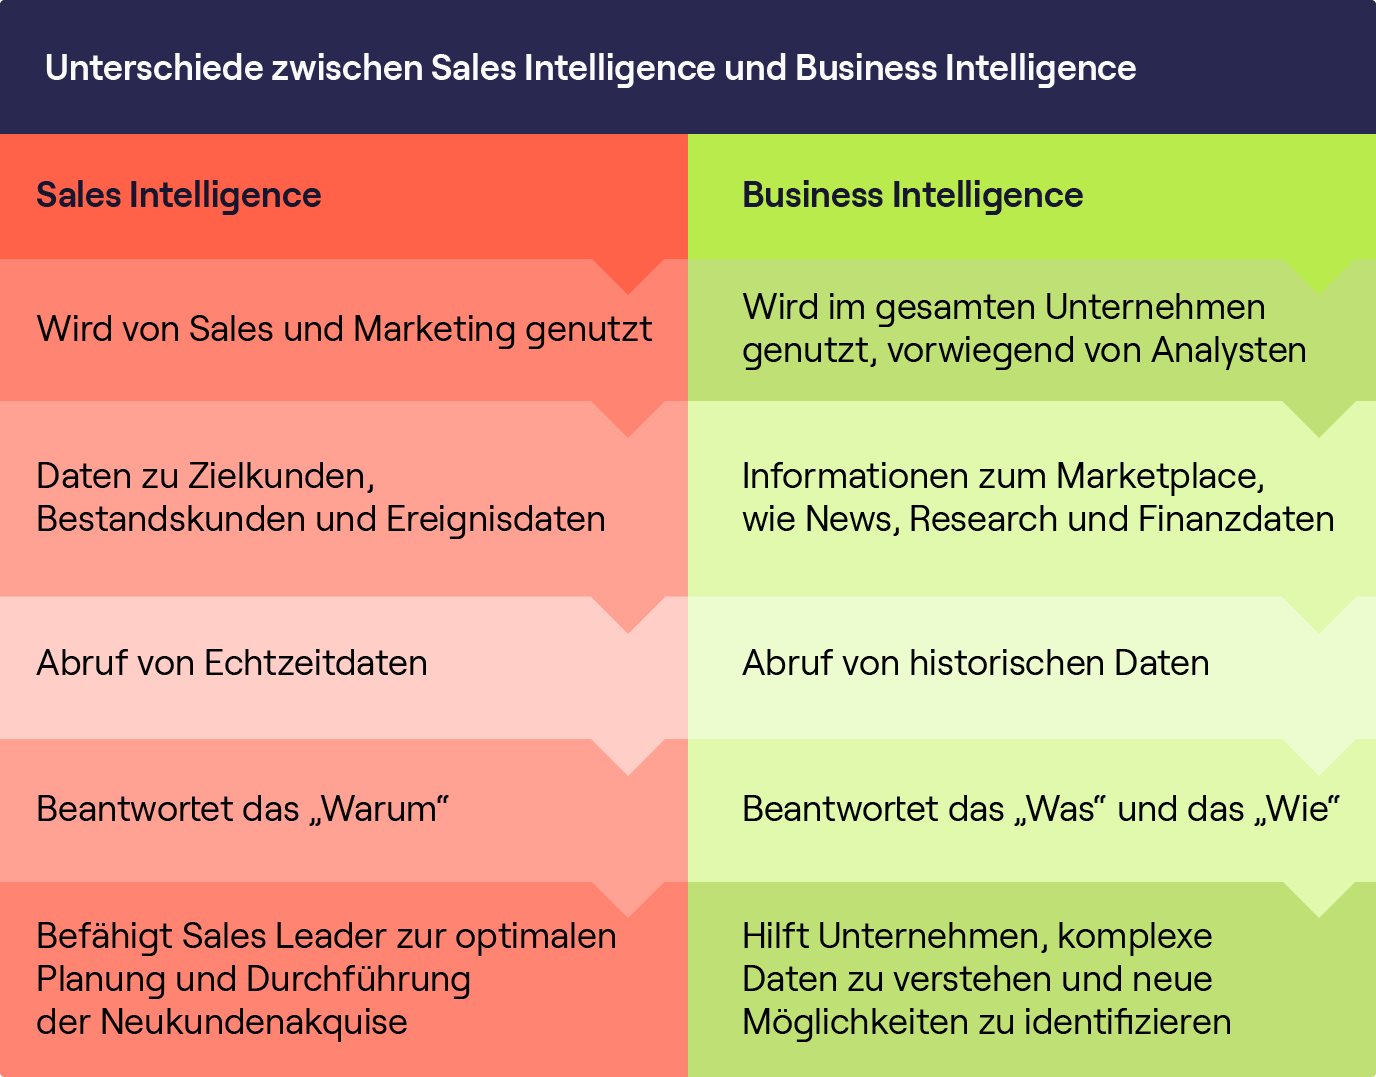 Eine Grafik mit den Unterschieden zwischen Sales Intelligence und Business Intelligence